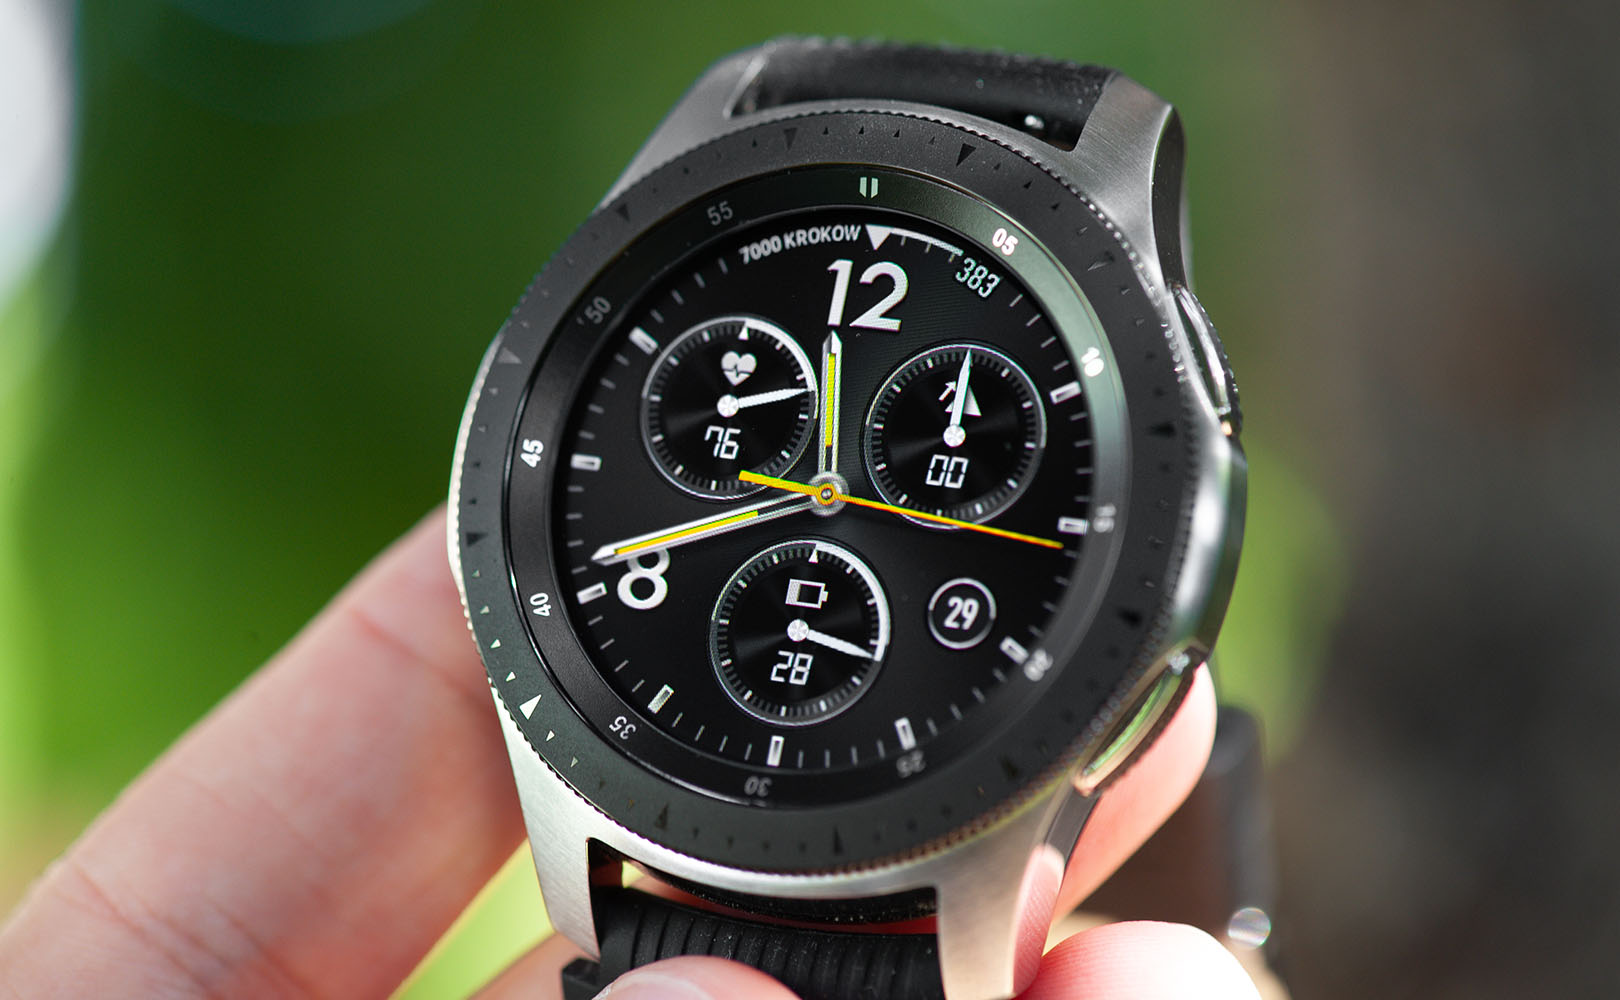 Samsung galaxy watch r800. Samsung Galaxy watch 46mm Silver r800. Samsung Galaxy watch 46mm серебристый. Часы Samsung Galaxy watch r800.